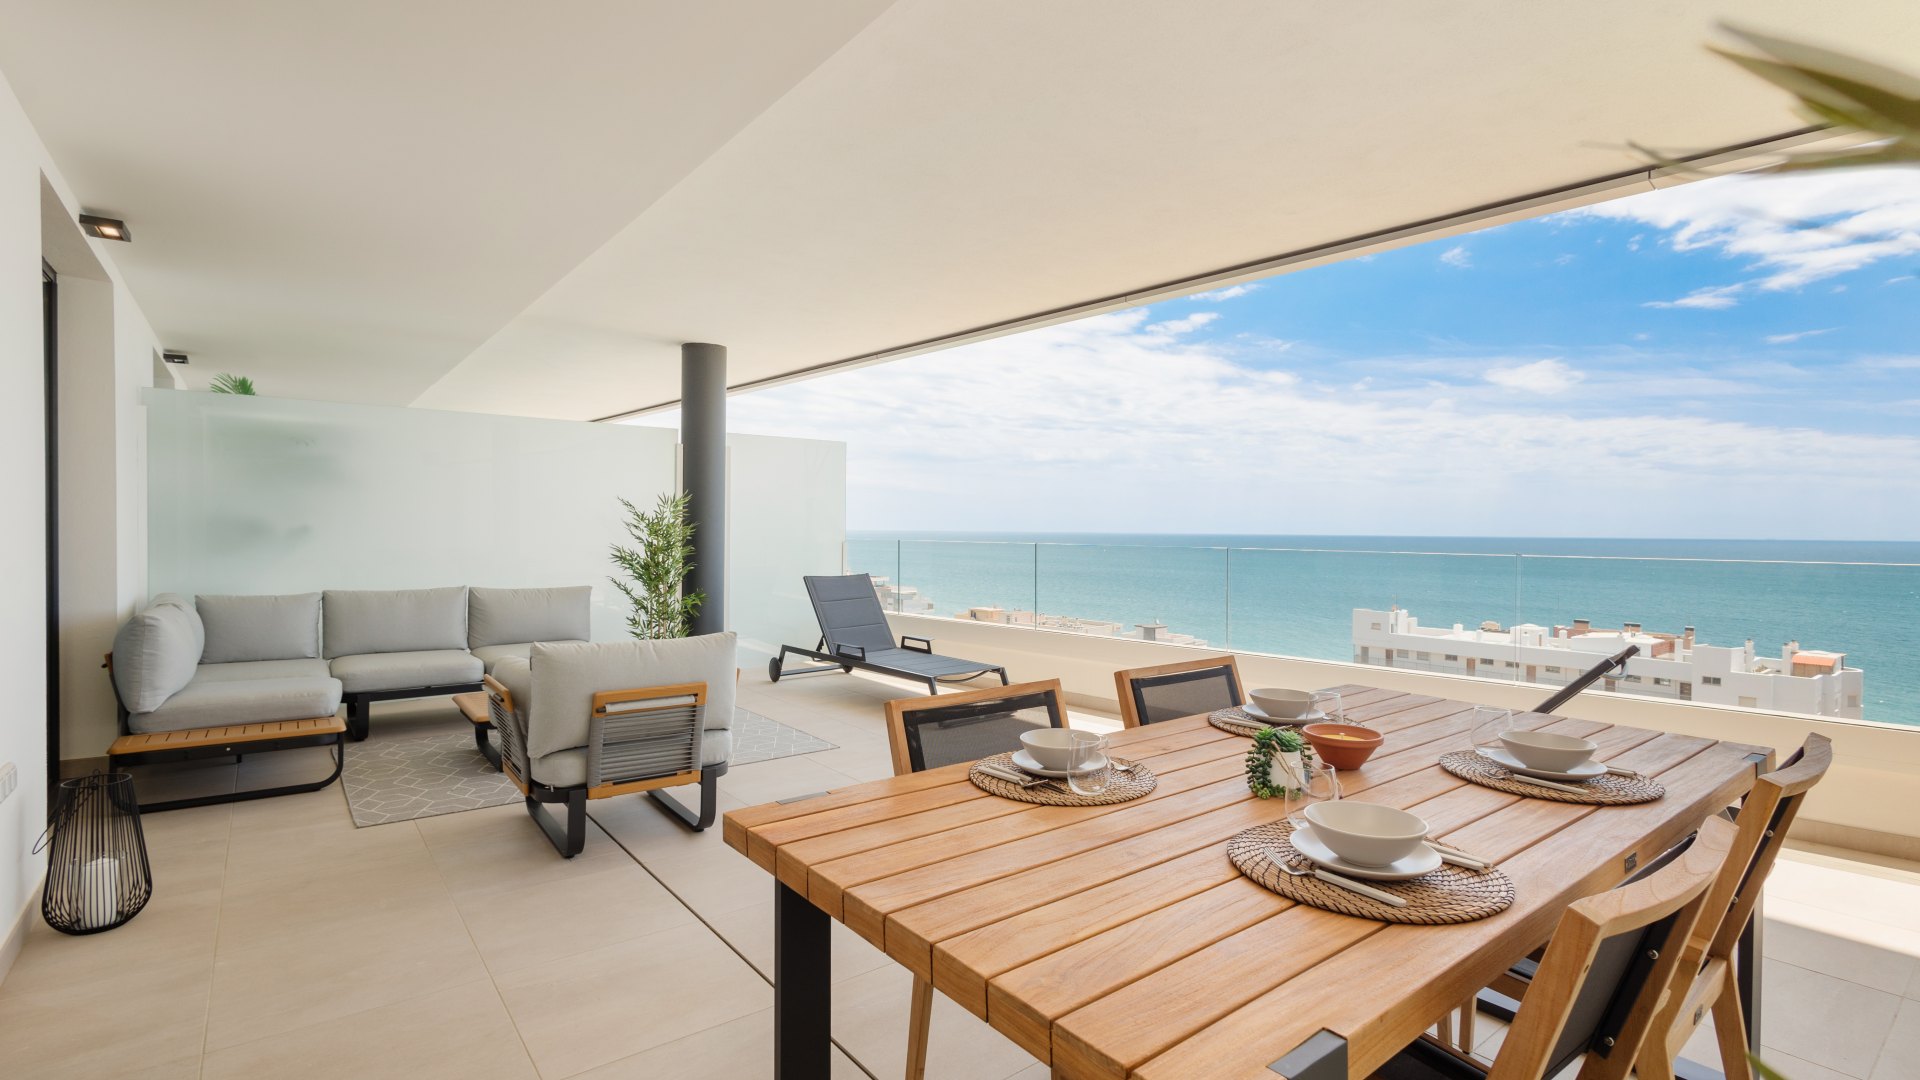 Moderno apartamento, con gran terraza y vistas panorámicas al mar, en Fuengirola